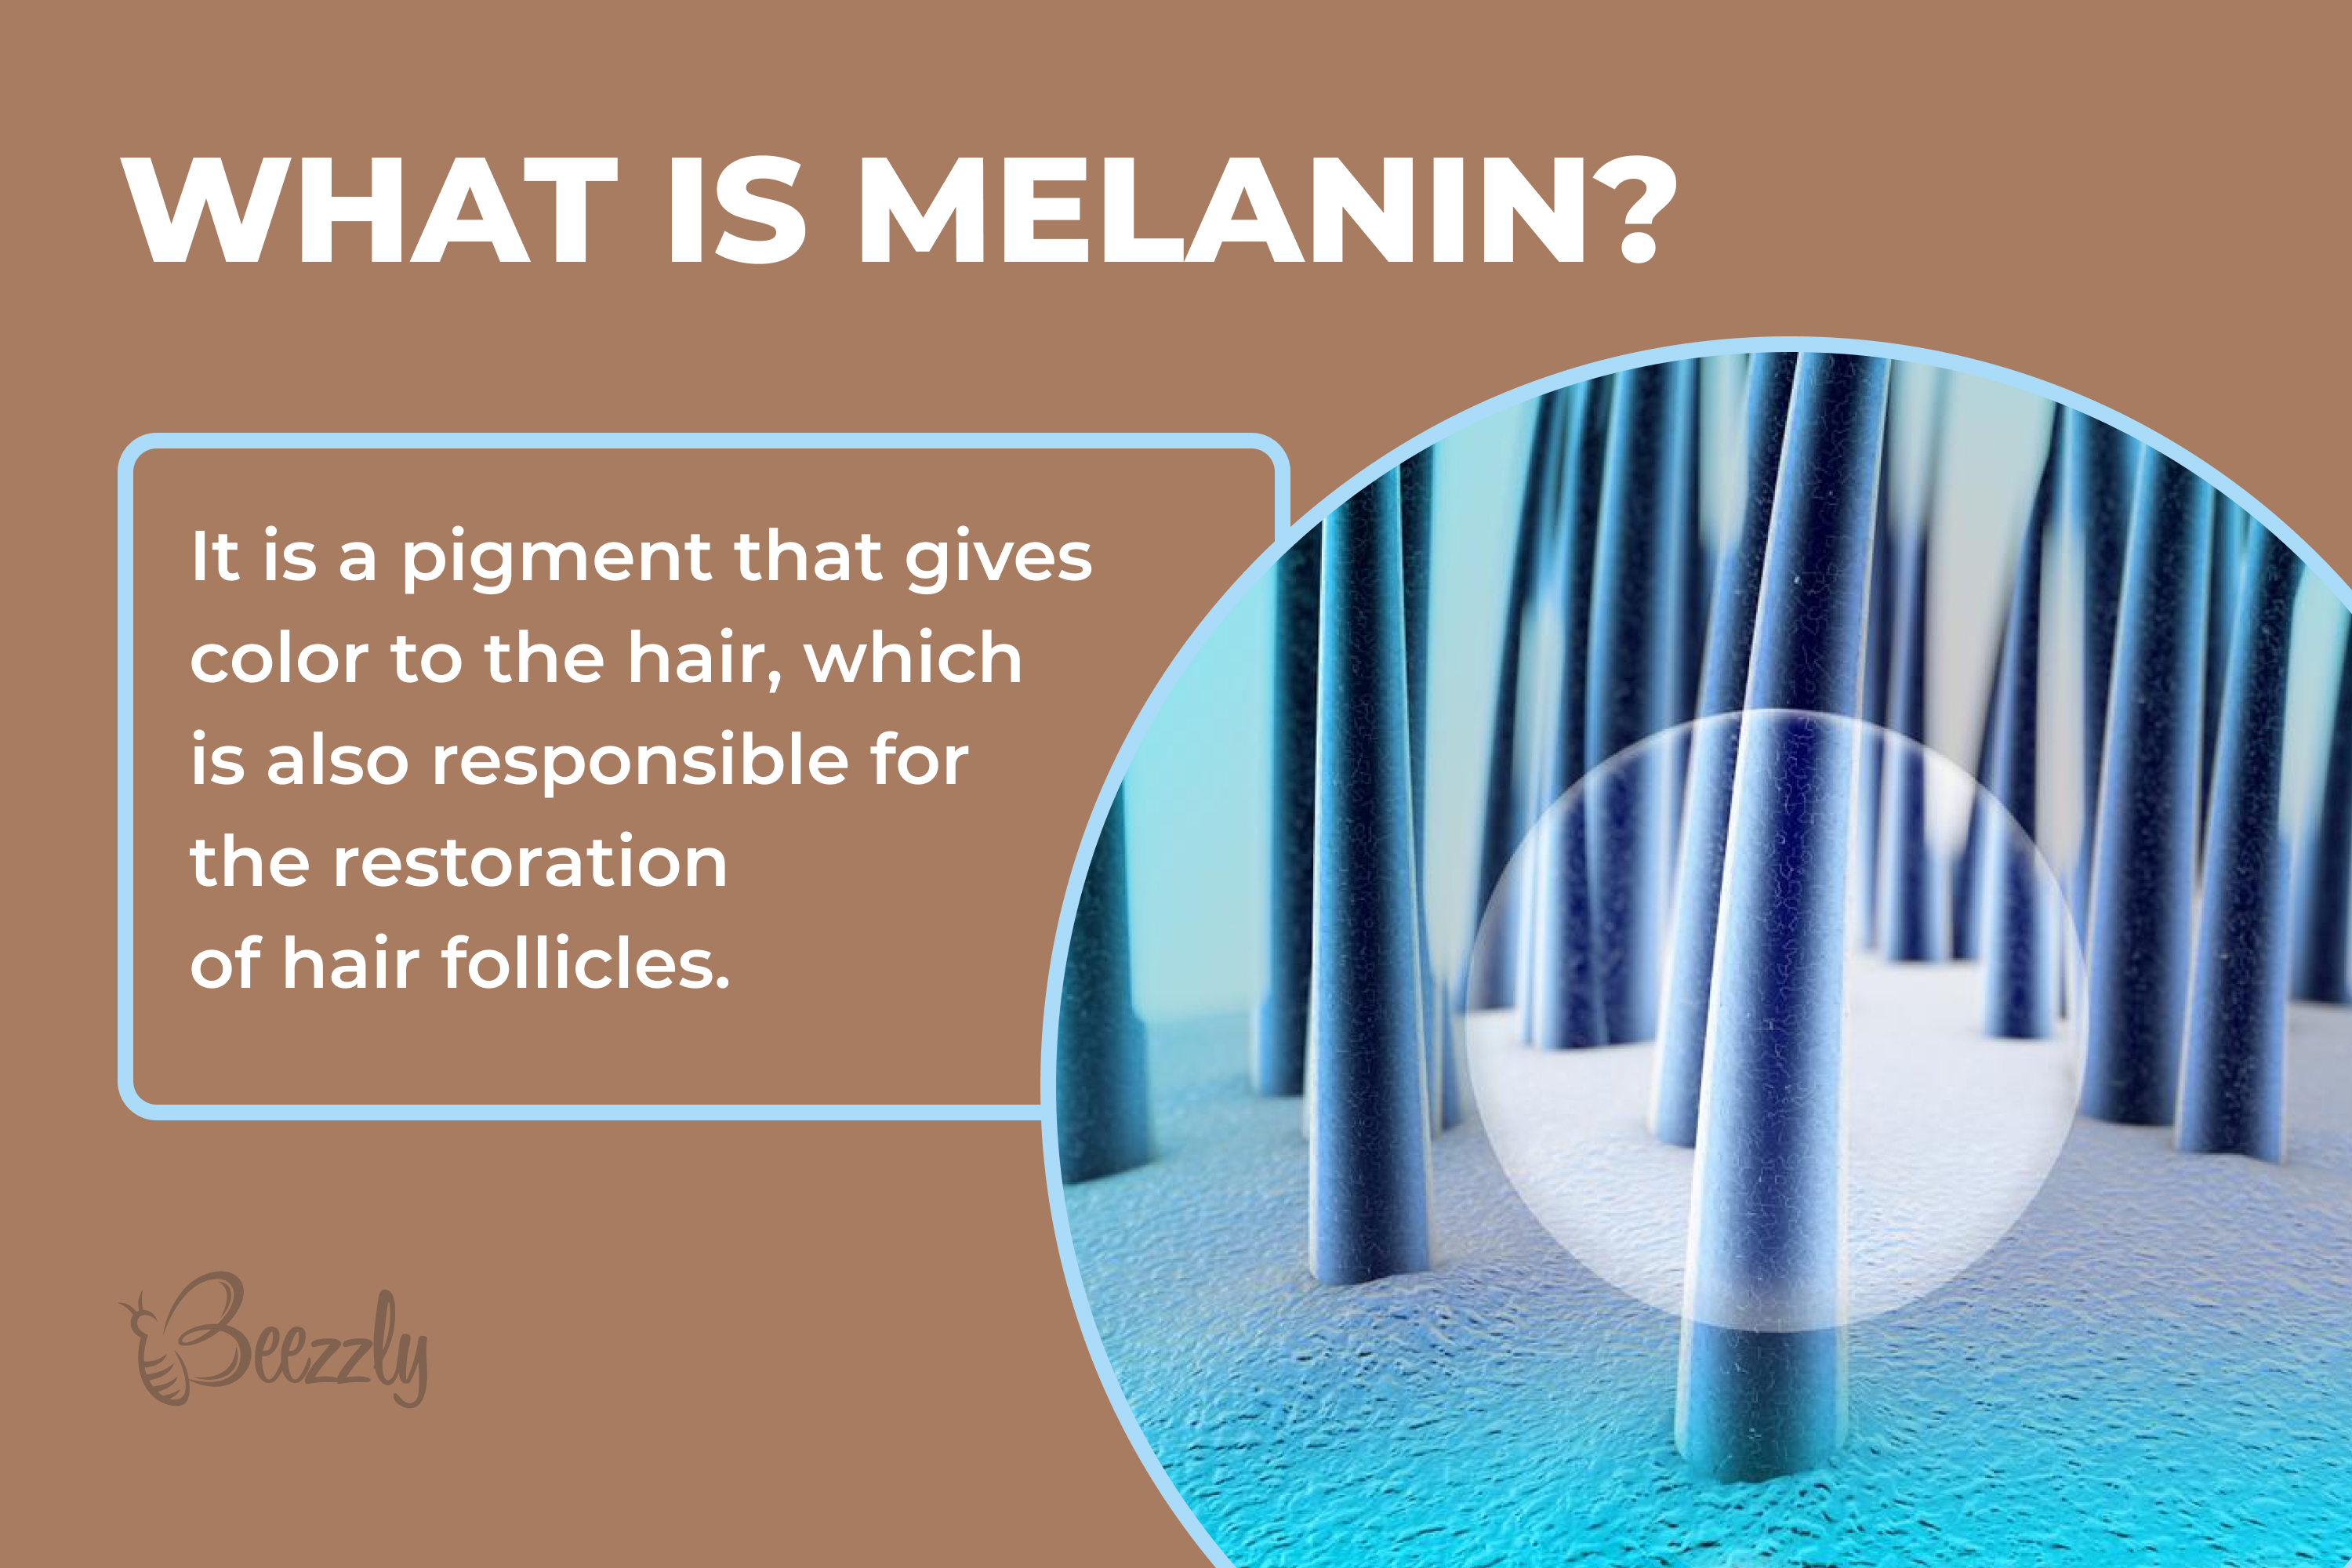 What is melanin